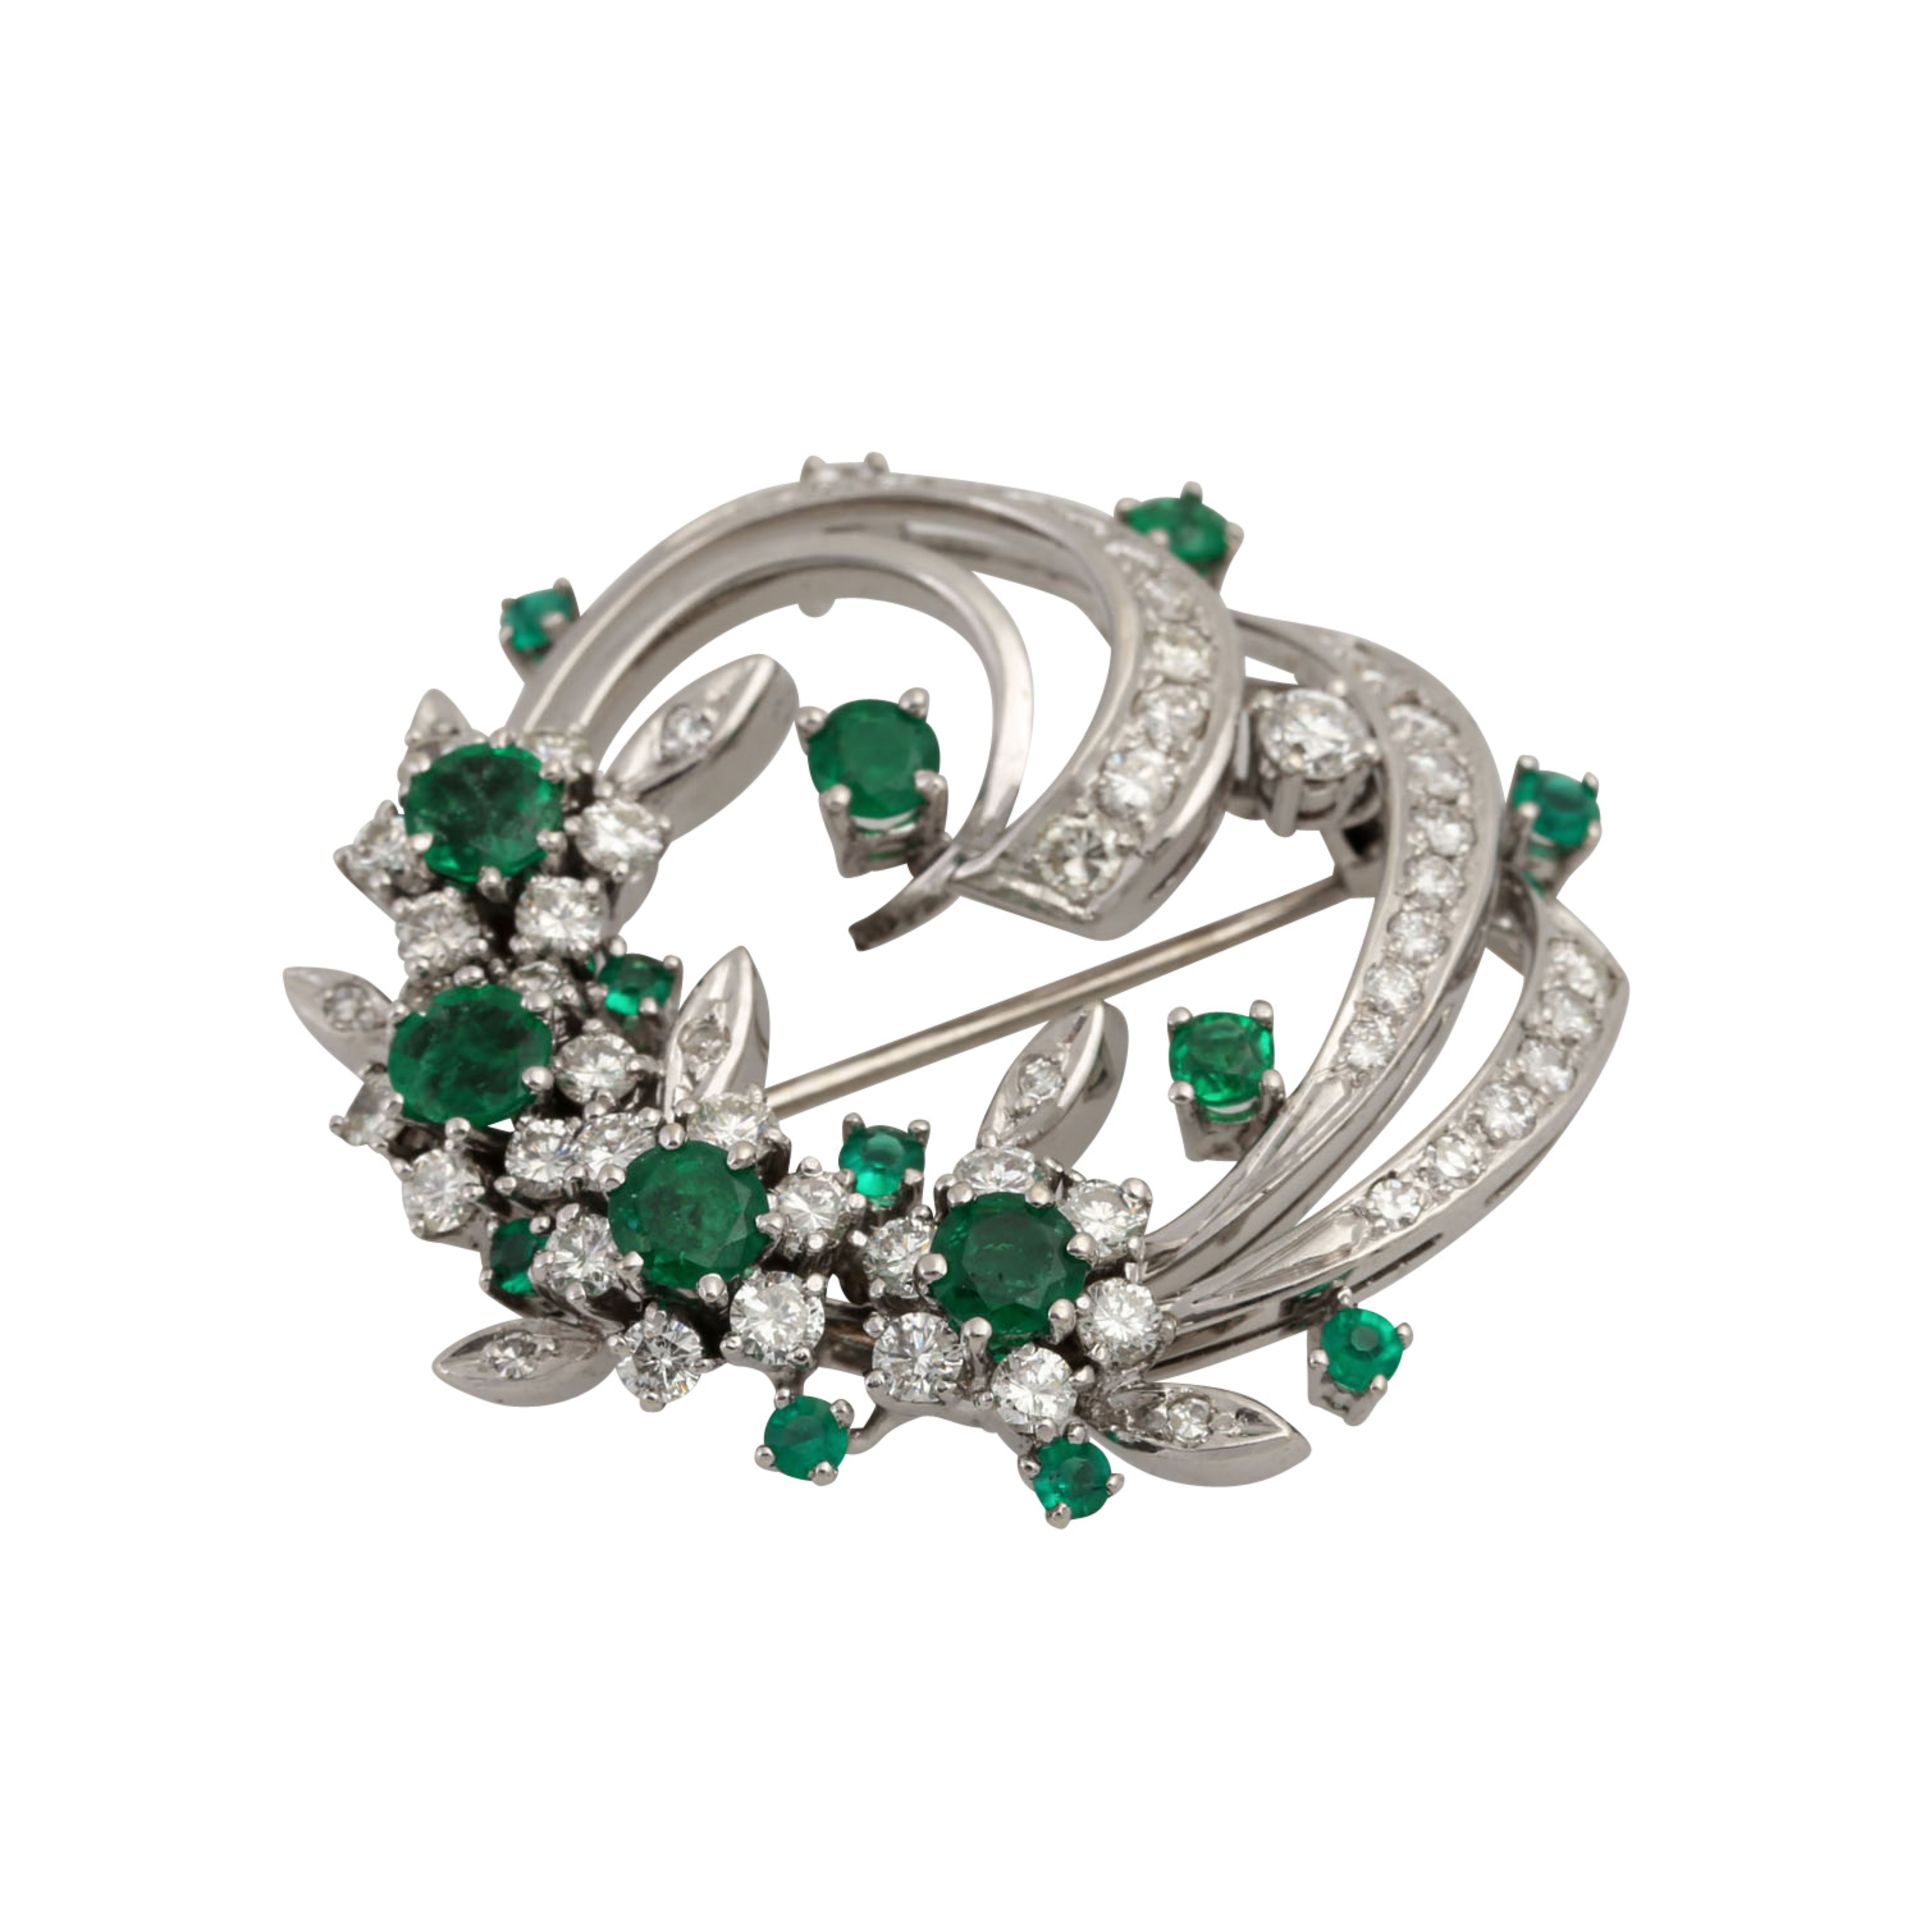 Brosche mit schönen Smaragden und Diamanten von zus. ca. 2,2 ct, Brillant- und Achtka - Image 4 of 5